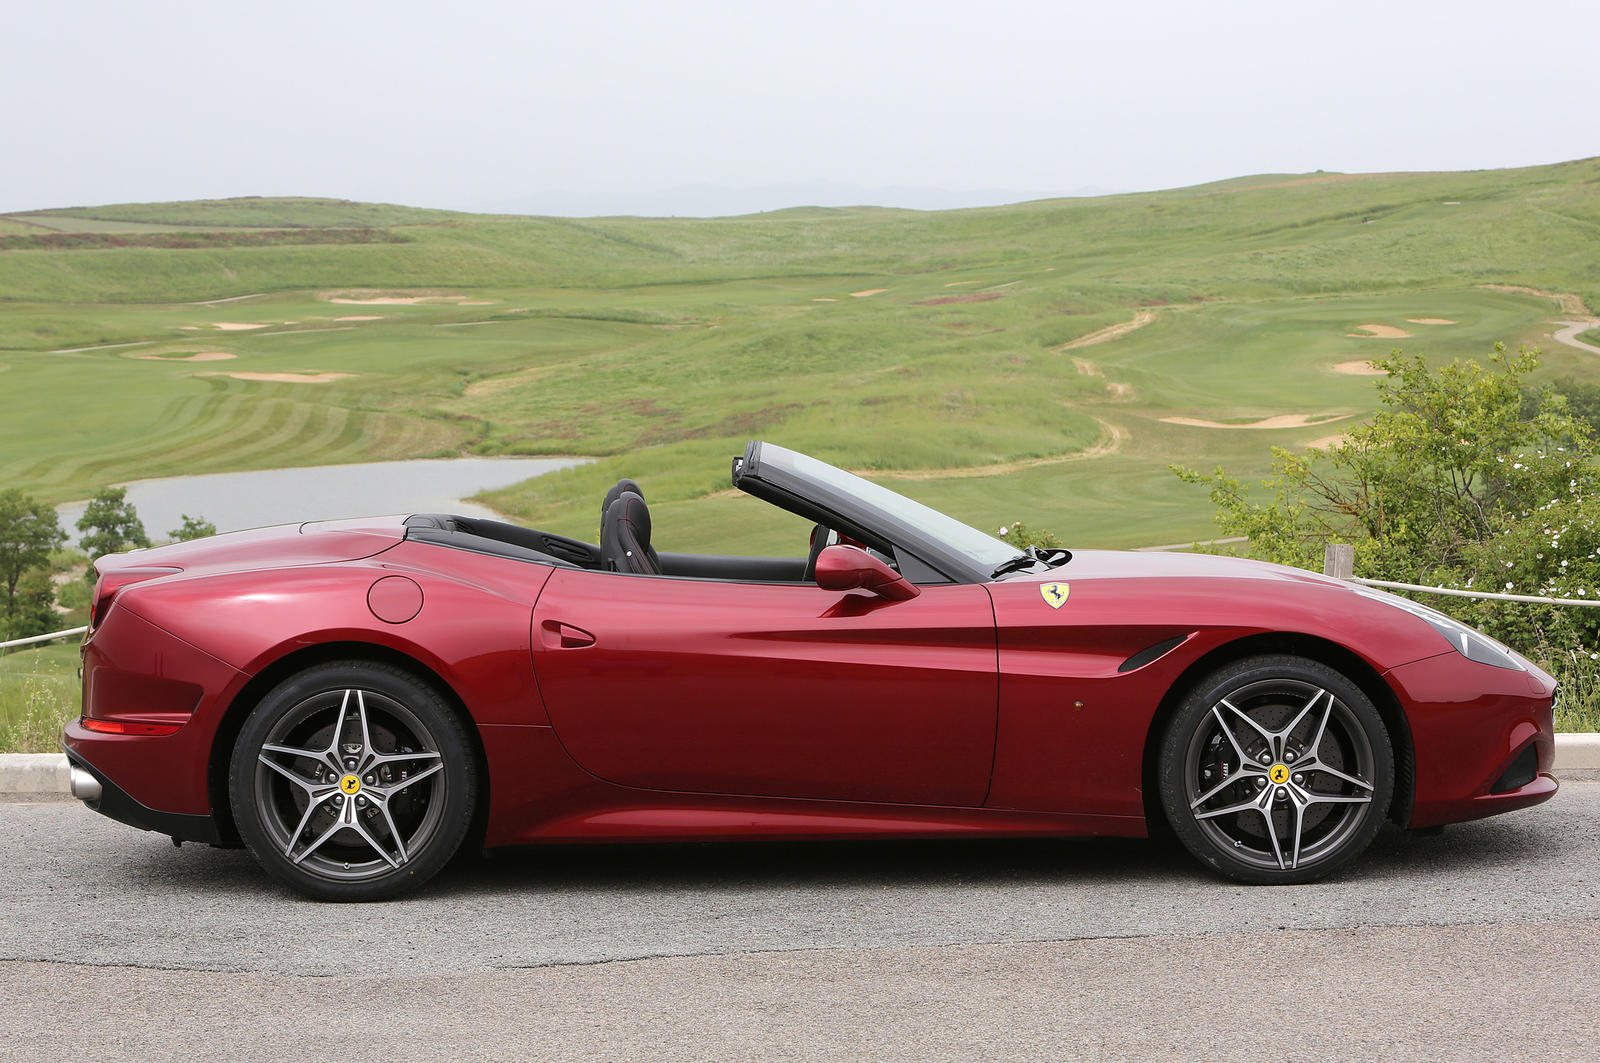 2015-Ferrari-California-T-side-view-in-red